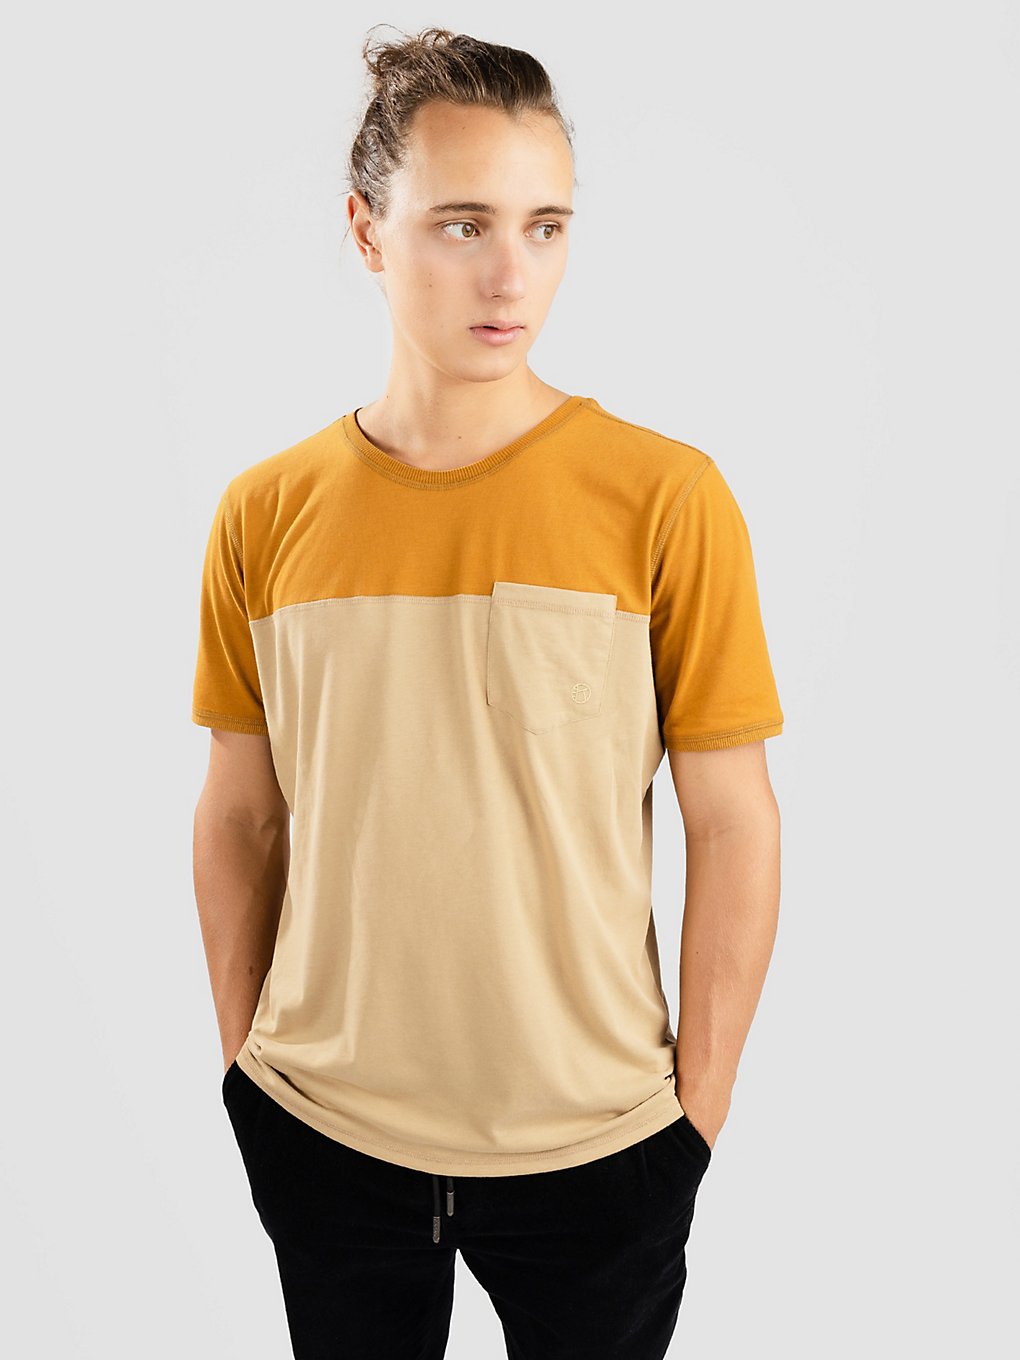 Kazane Filip T-Shirt golden brown kaufen